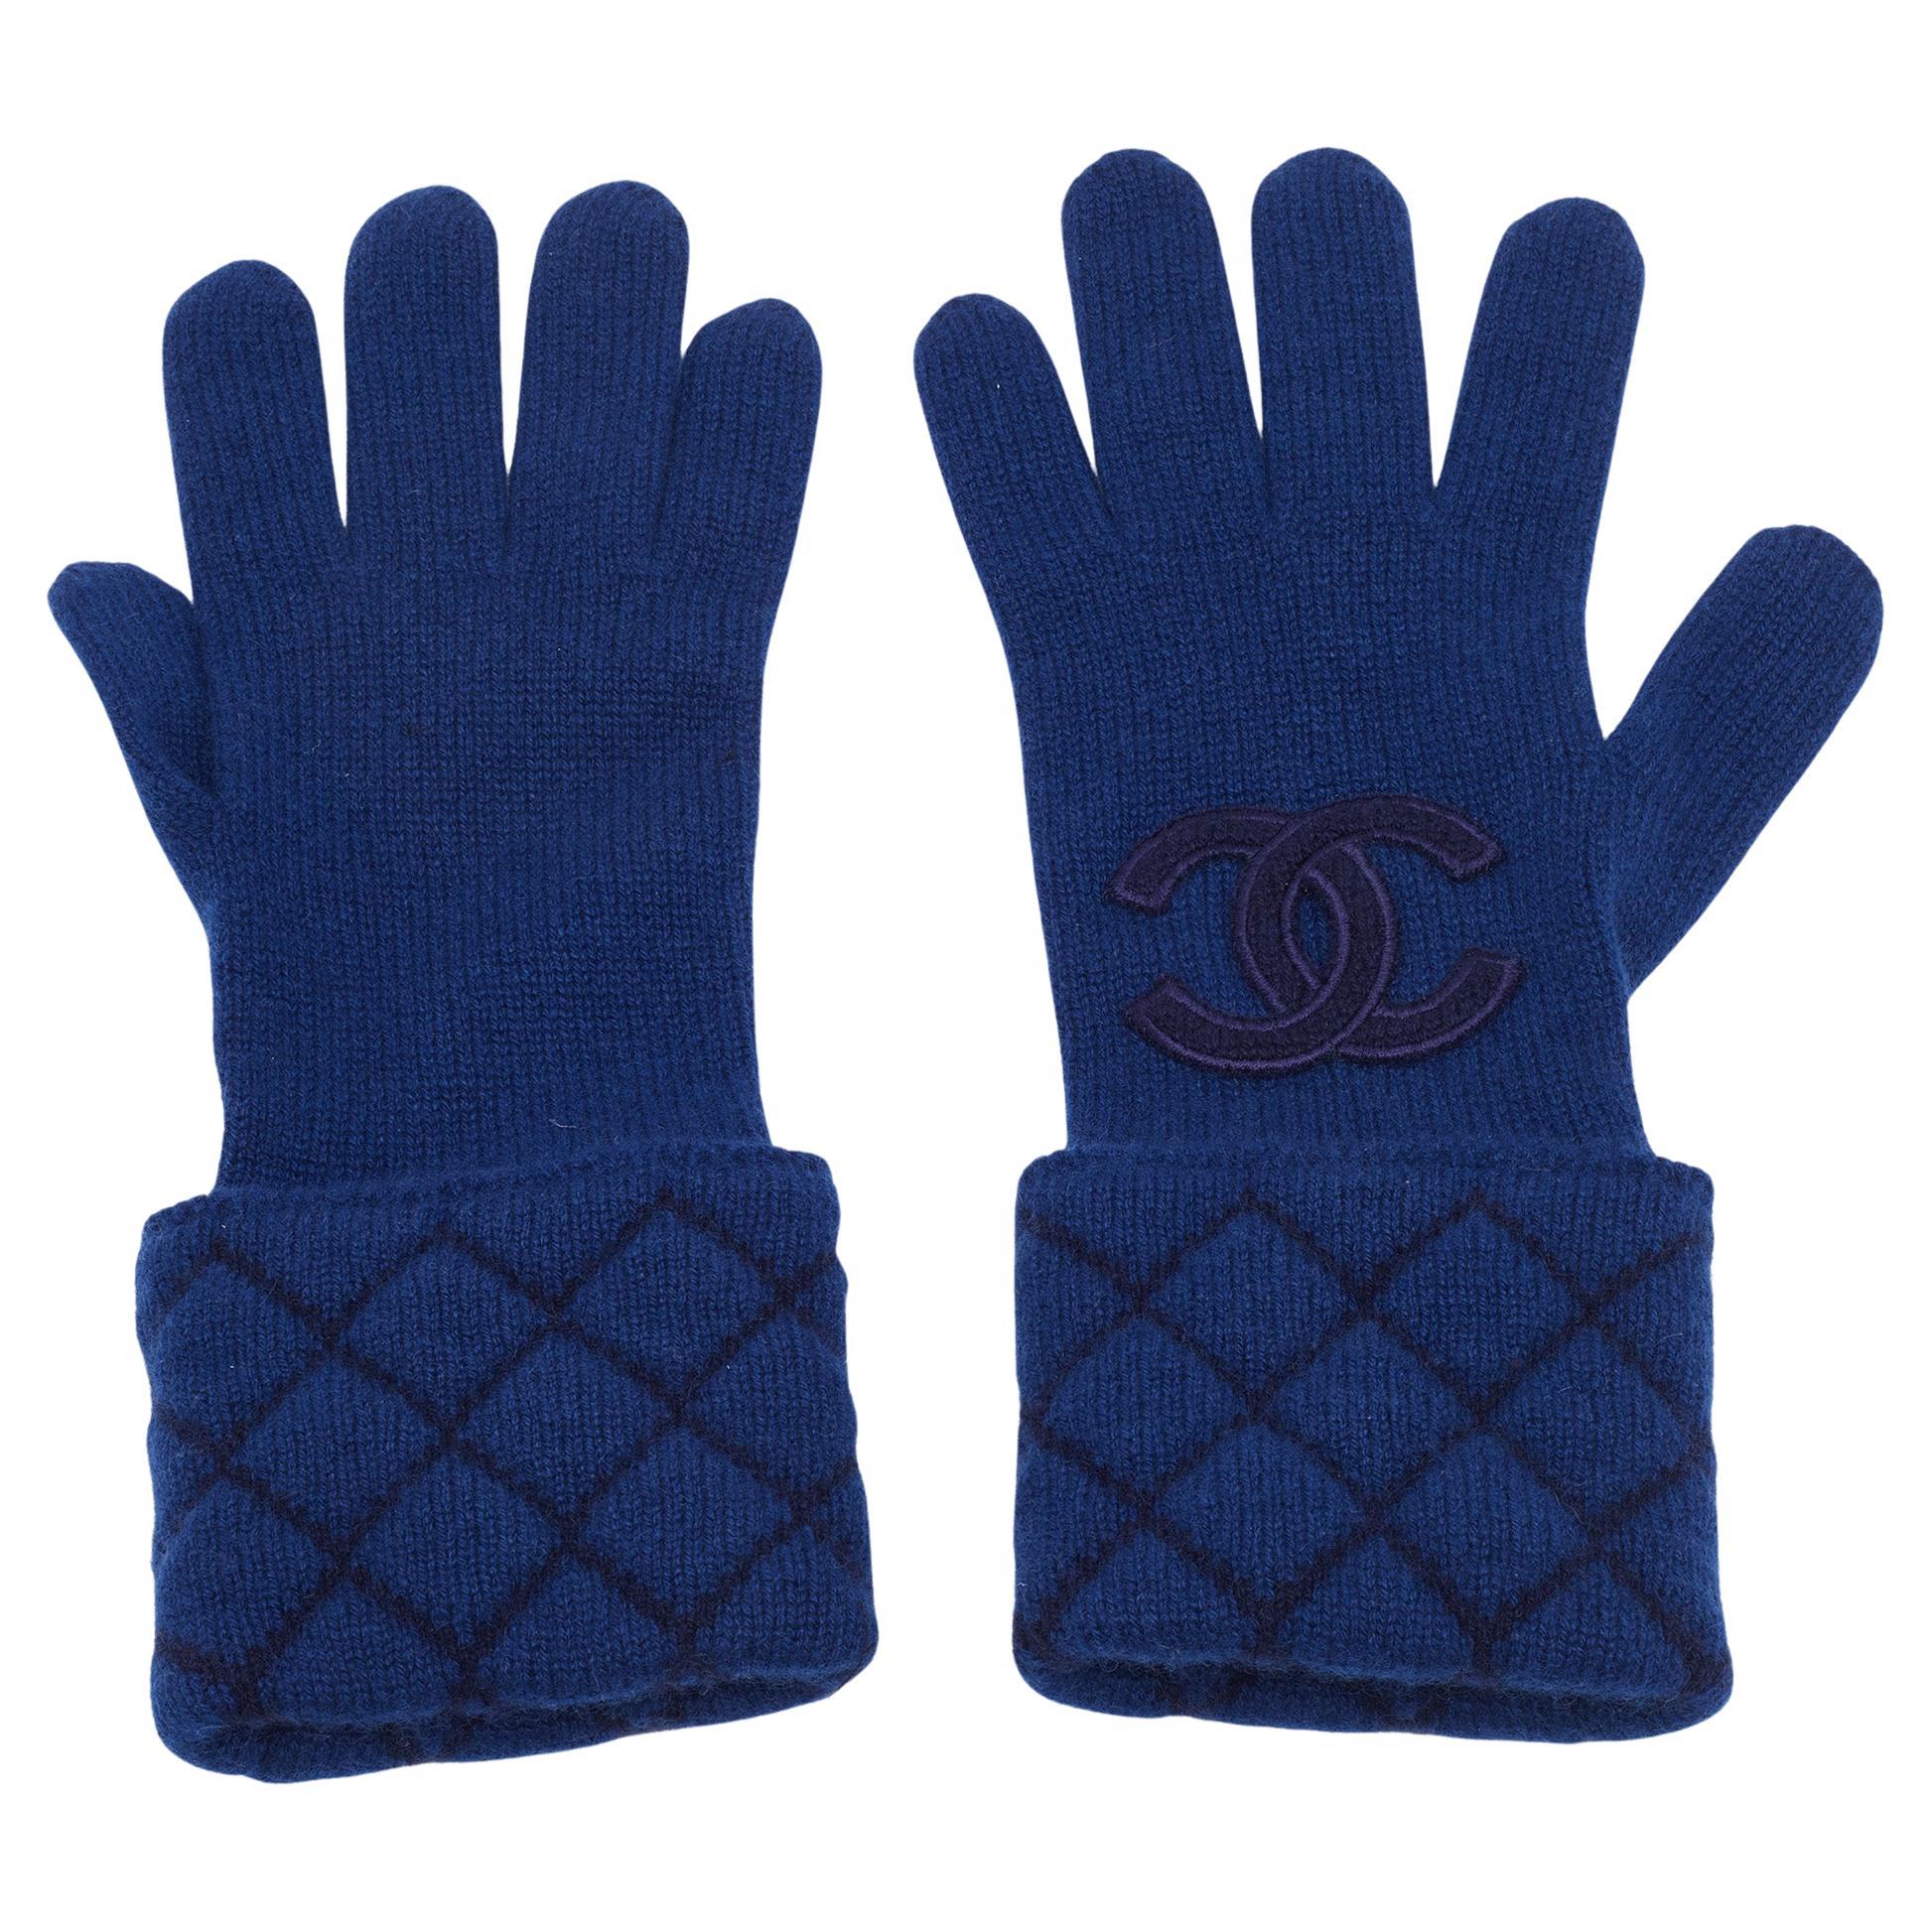 Chanel Gloves - 23 For Sale on 1stDibs | chanel fingerless gloves 